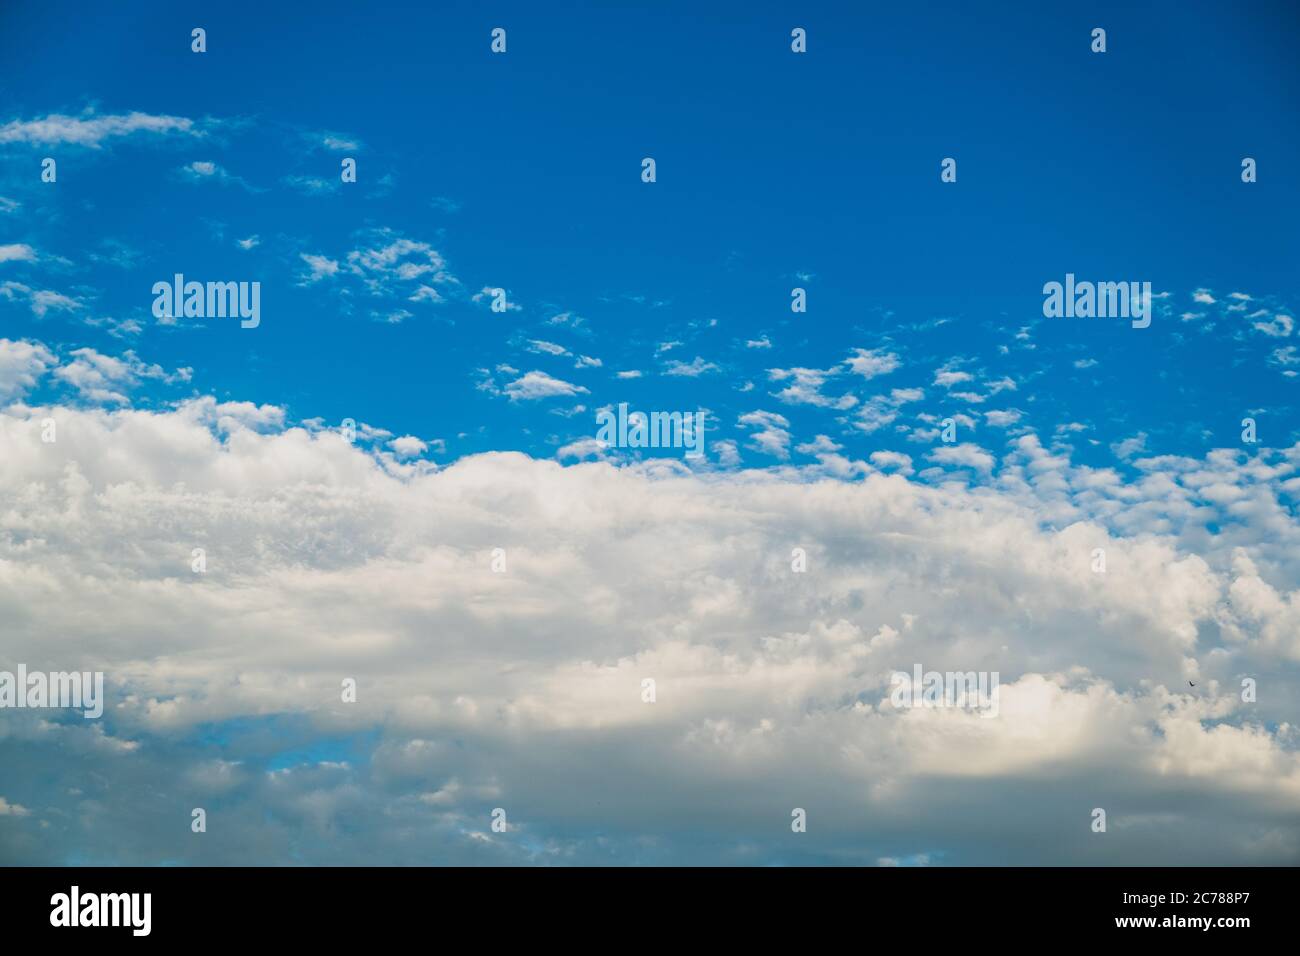 Blauer Himmel, sauberes Wetter, schöne Wolken, große weiße rollende Masse. Himmel mit Wolken Wetter Natur Wolke blau. Stockfoto